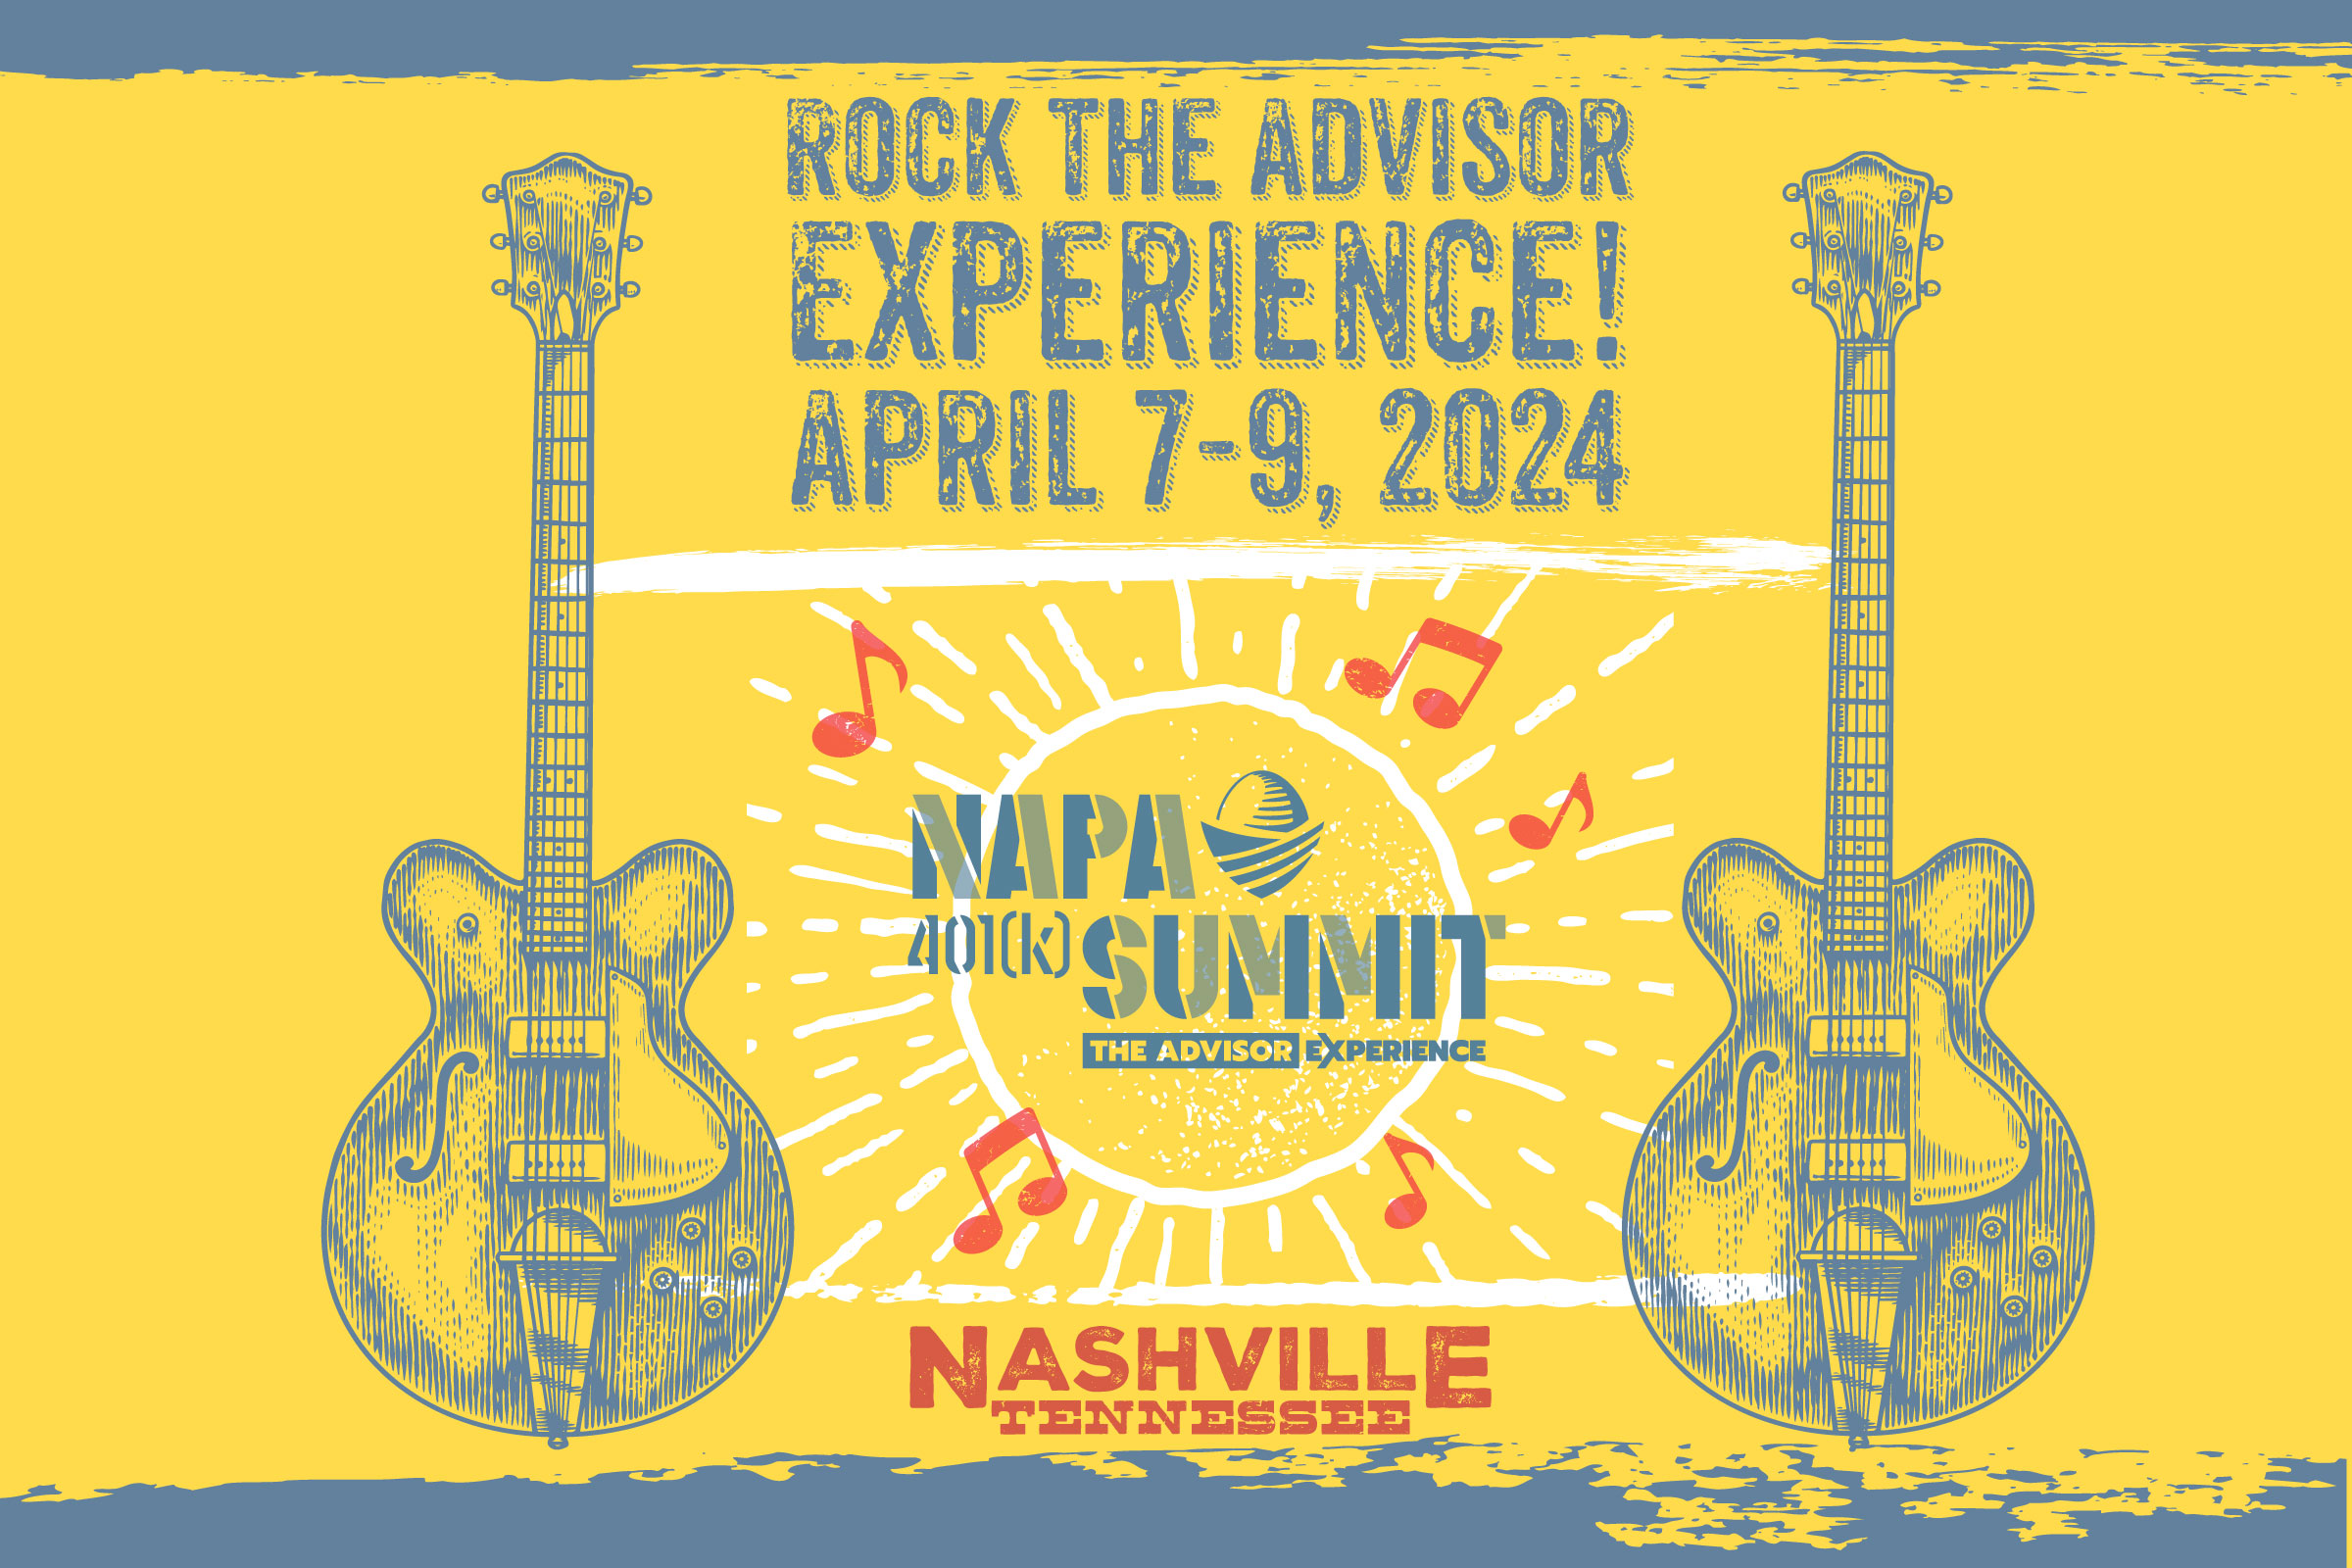 Nashville Save NAPA 401(k) Summit